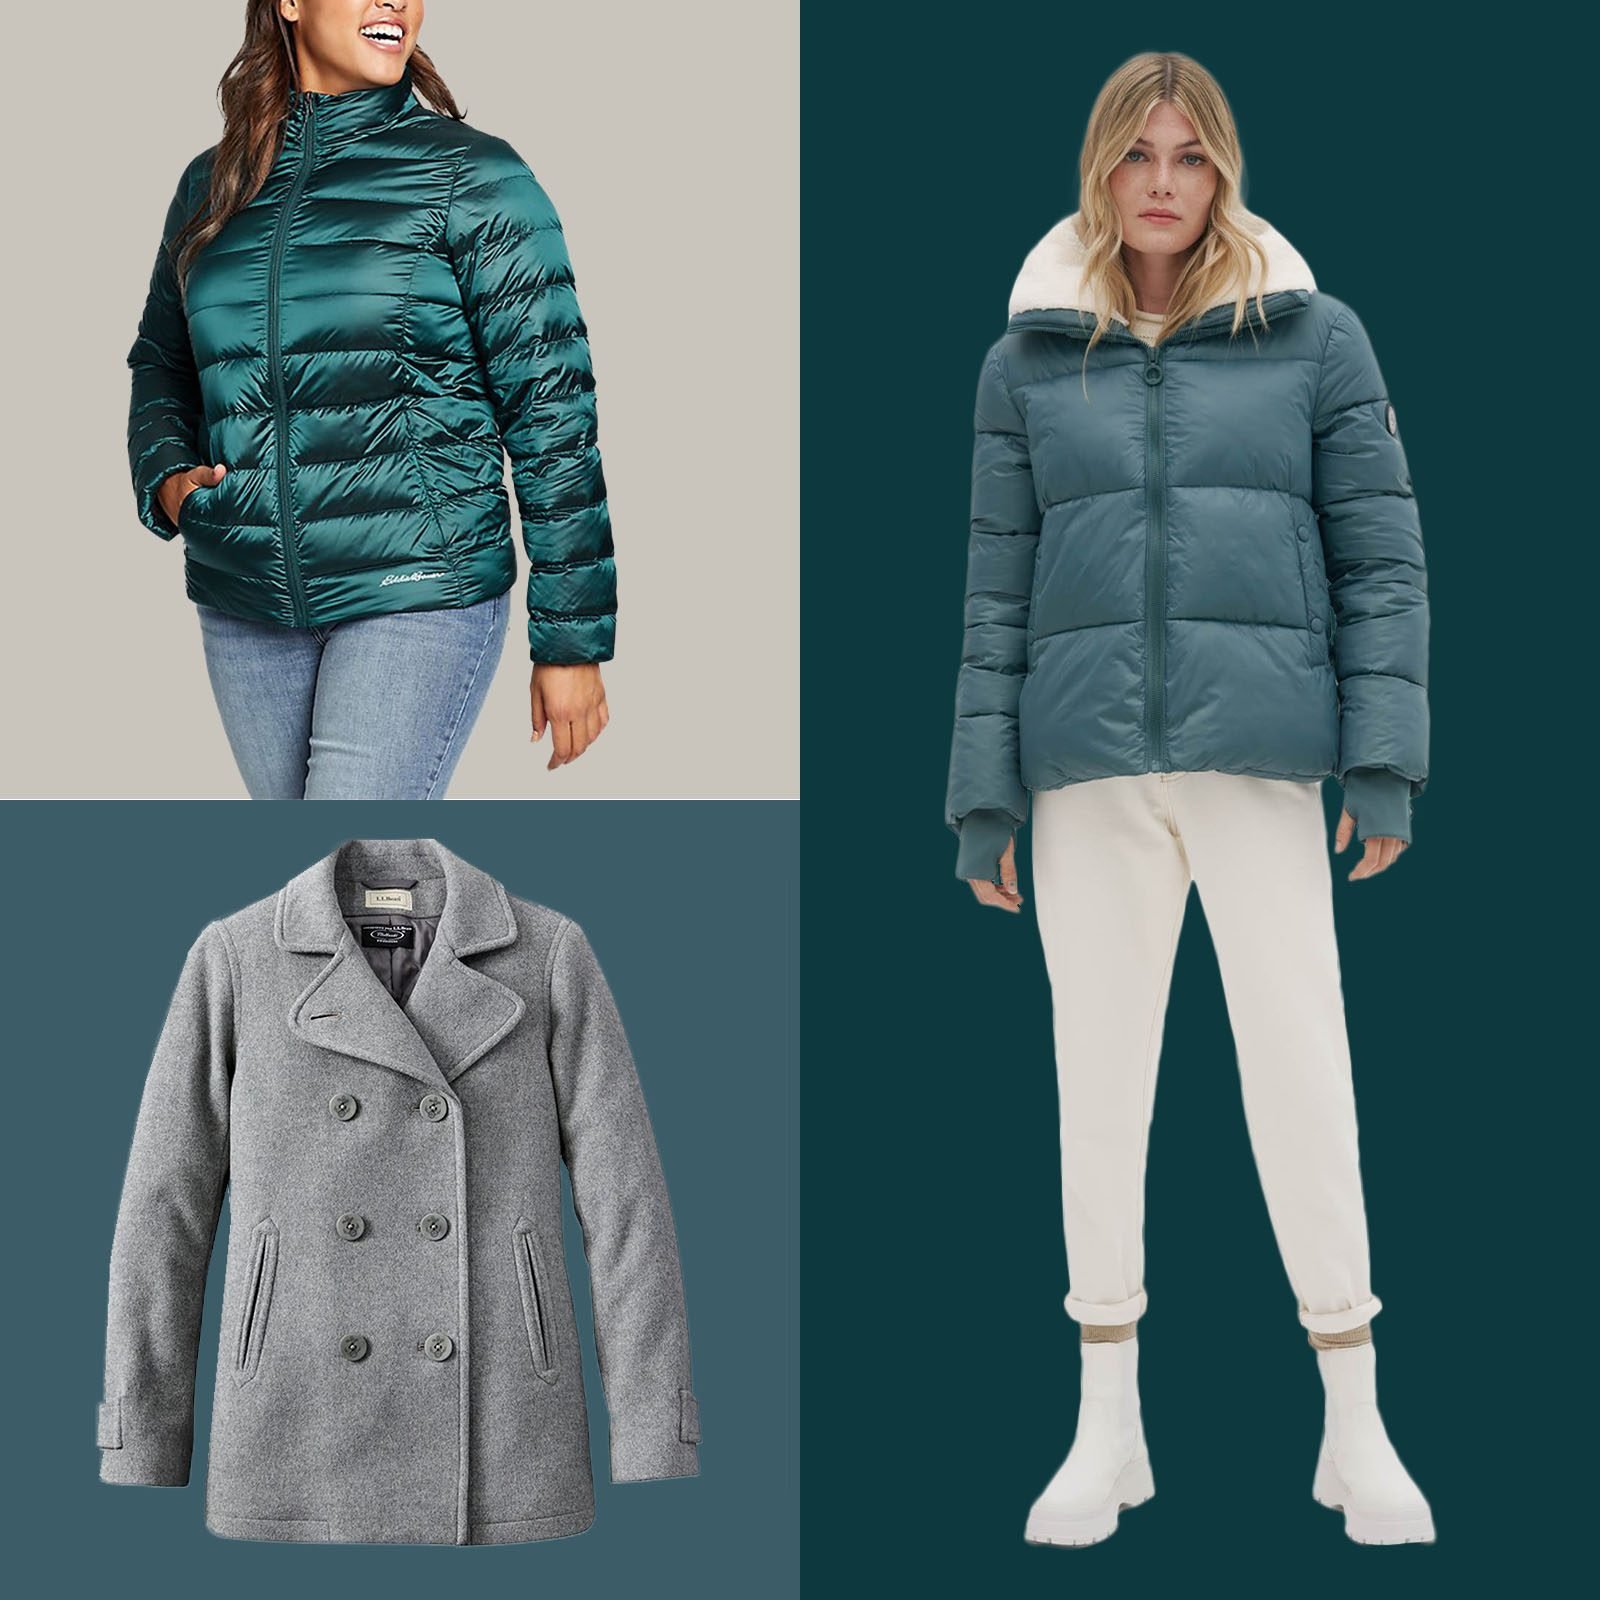 23 Warmest Winter Coats for Women 2022 | Warm, Stylish Women's Coats